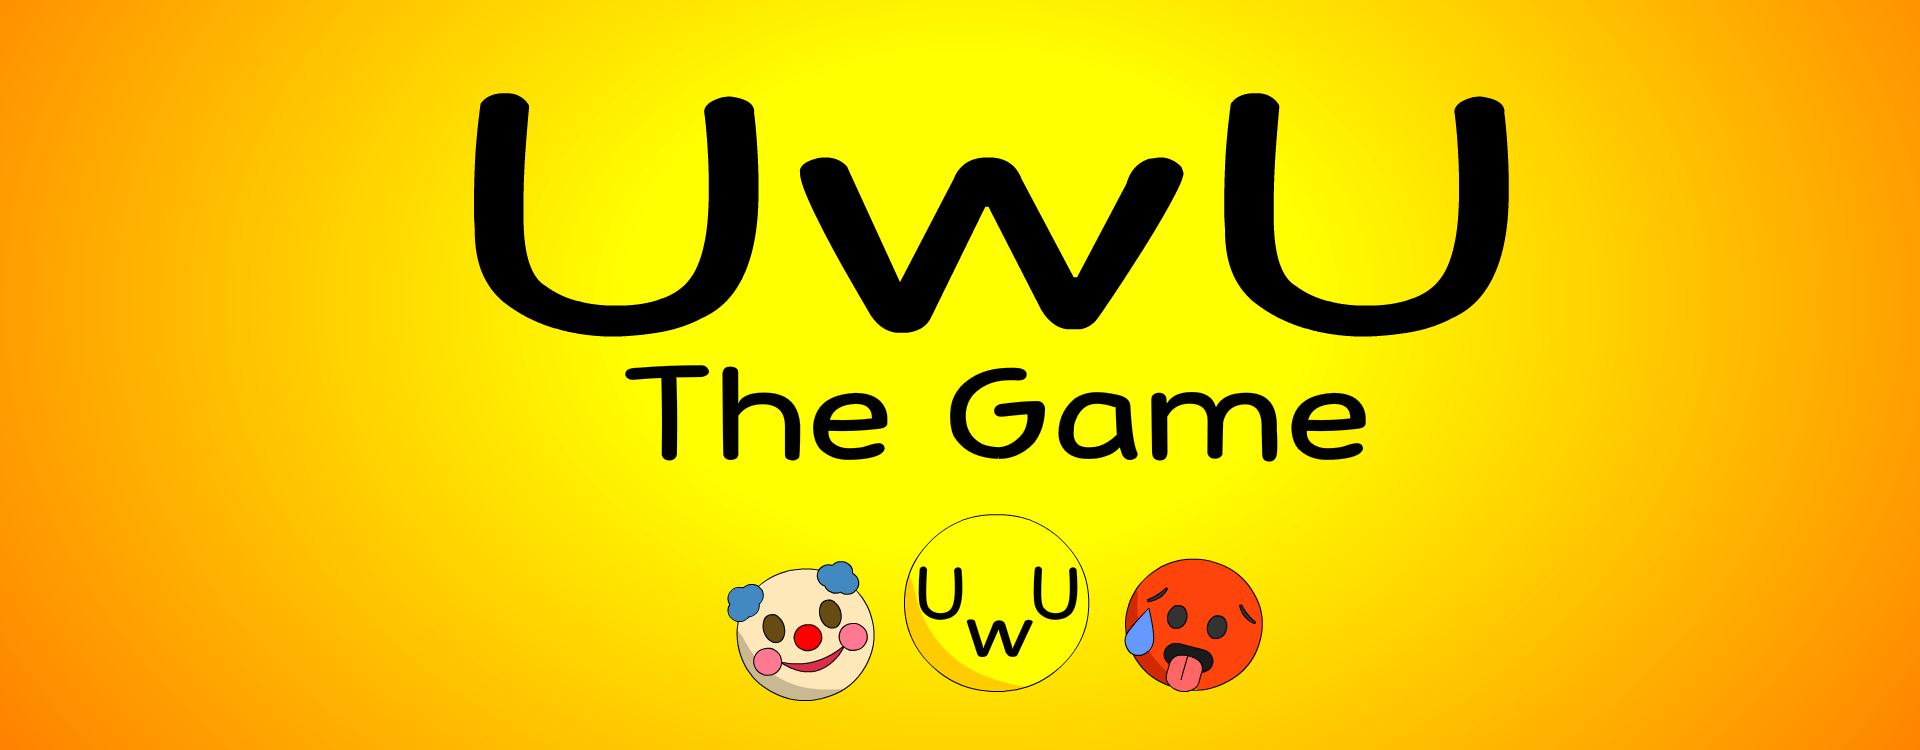 UwU The Game